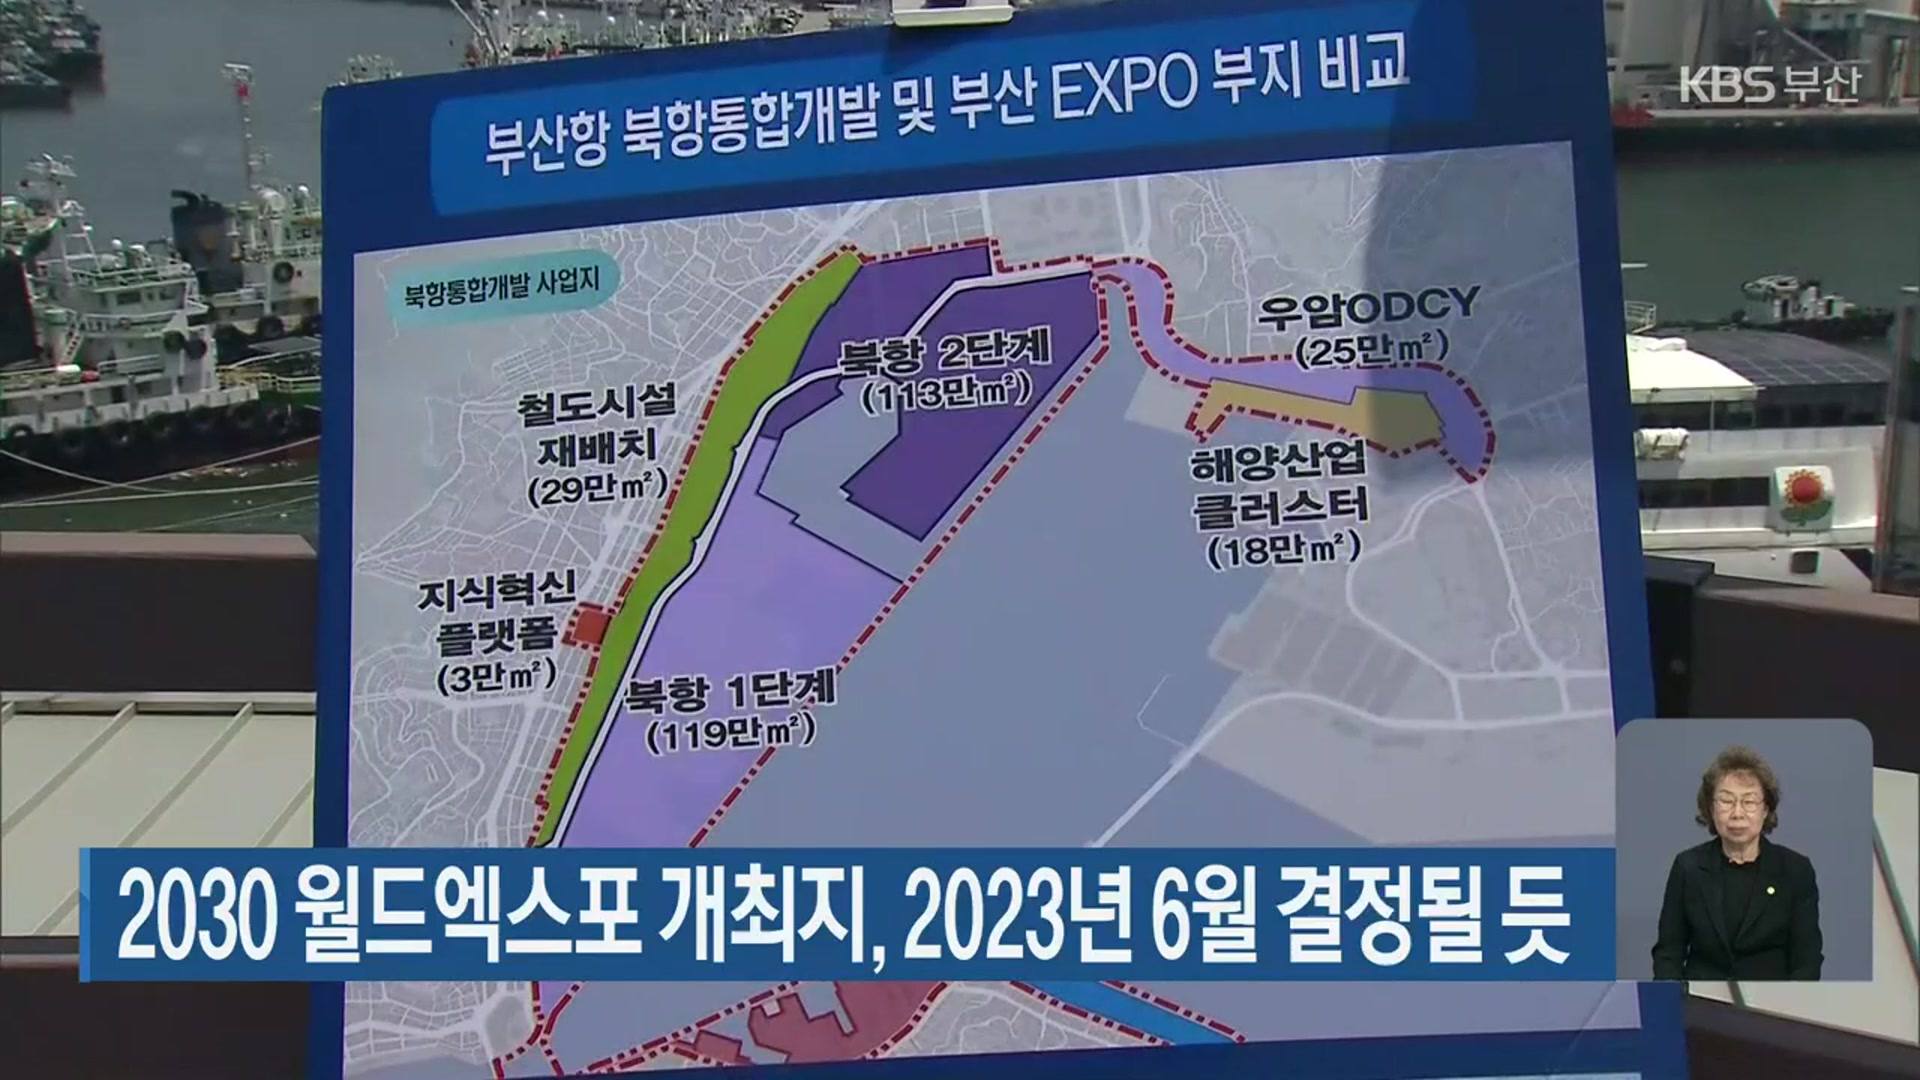 2030 월드엑스포 개최지, 2023년 6월 결정될 듯